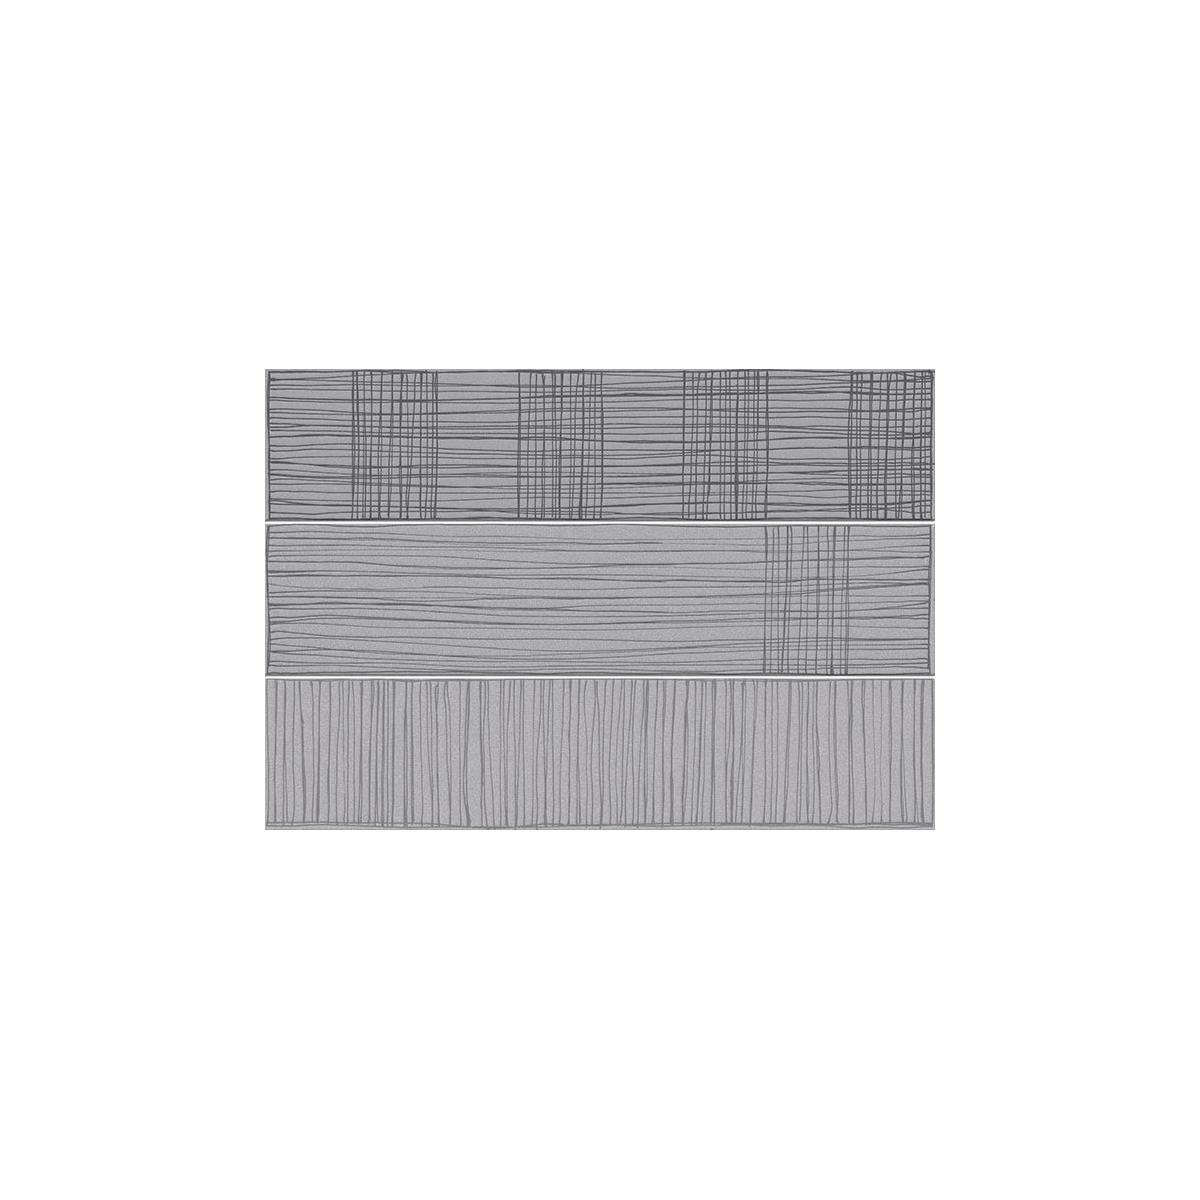 Kaika gris 23x33,5 (m2) - Colección Hanami - Marca Vives